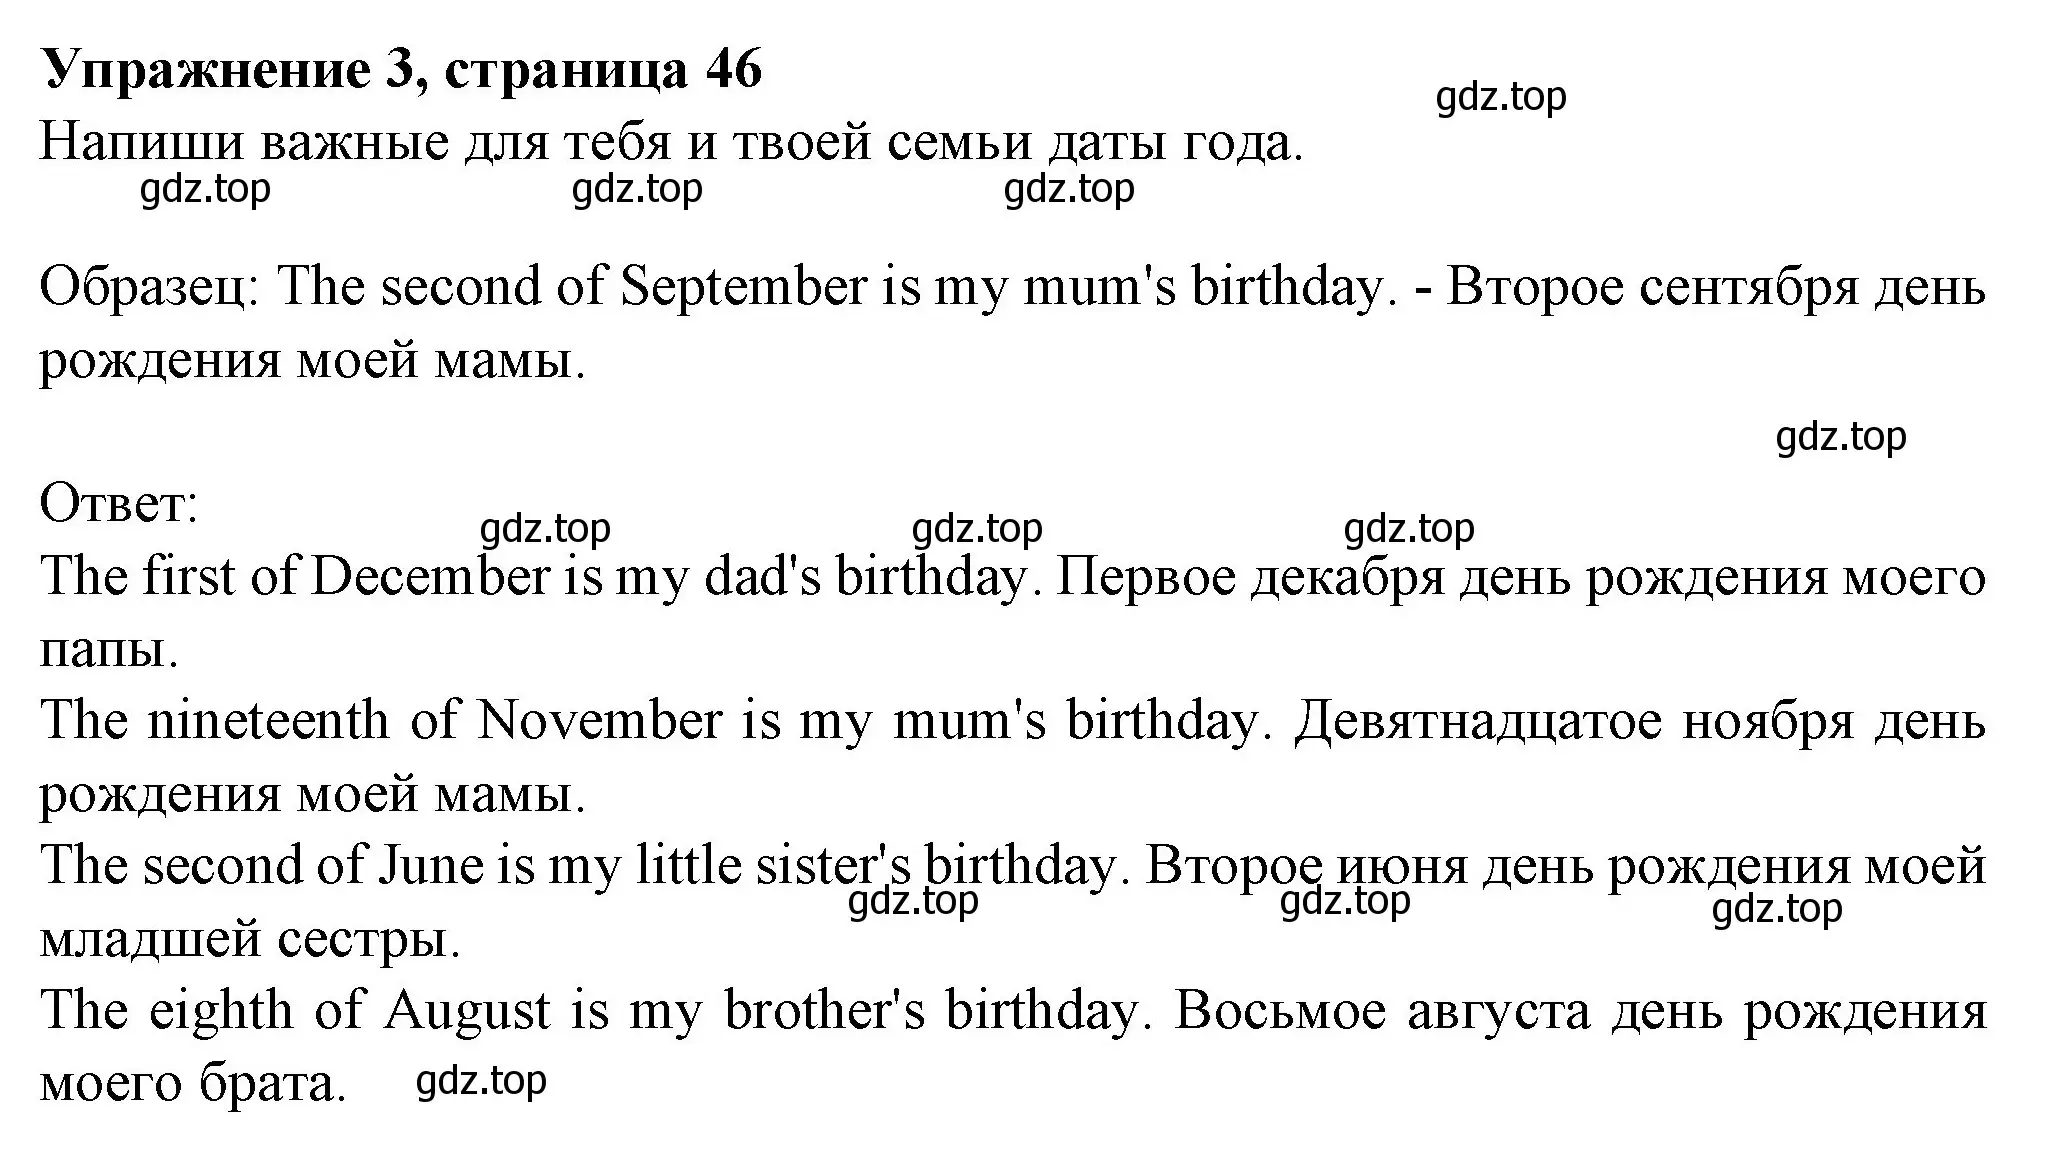 Решение номер 3 (страница 46) гдз по английскому языку 3 класс Биболетова, Денисенко, рабочая тетрадь